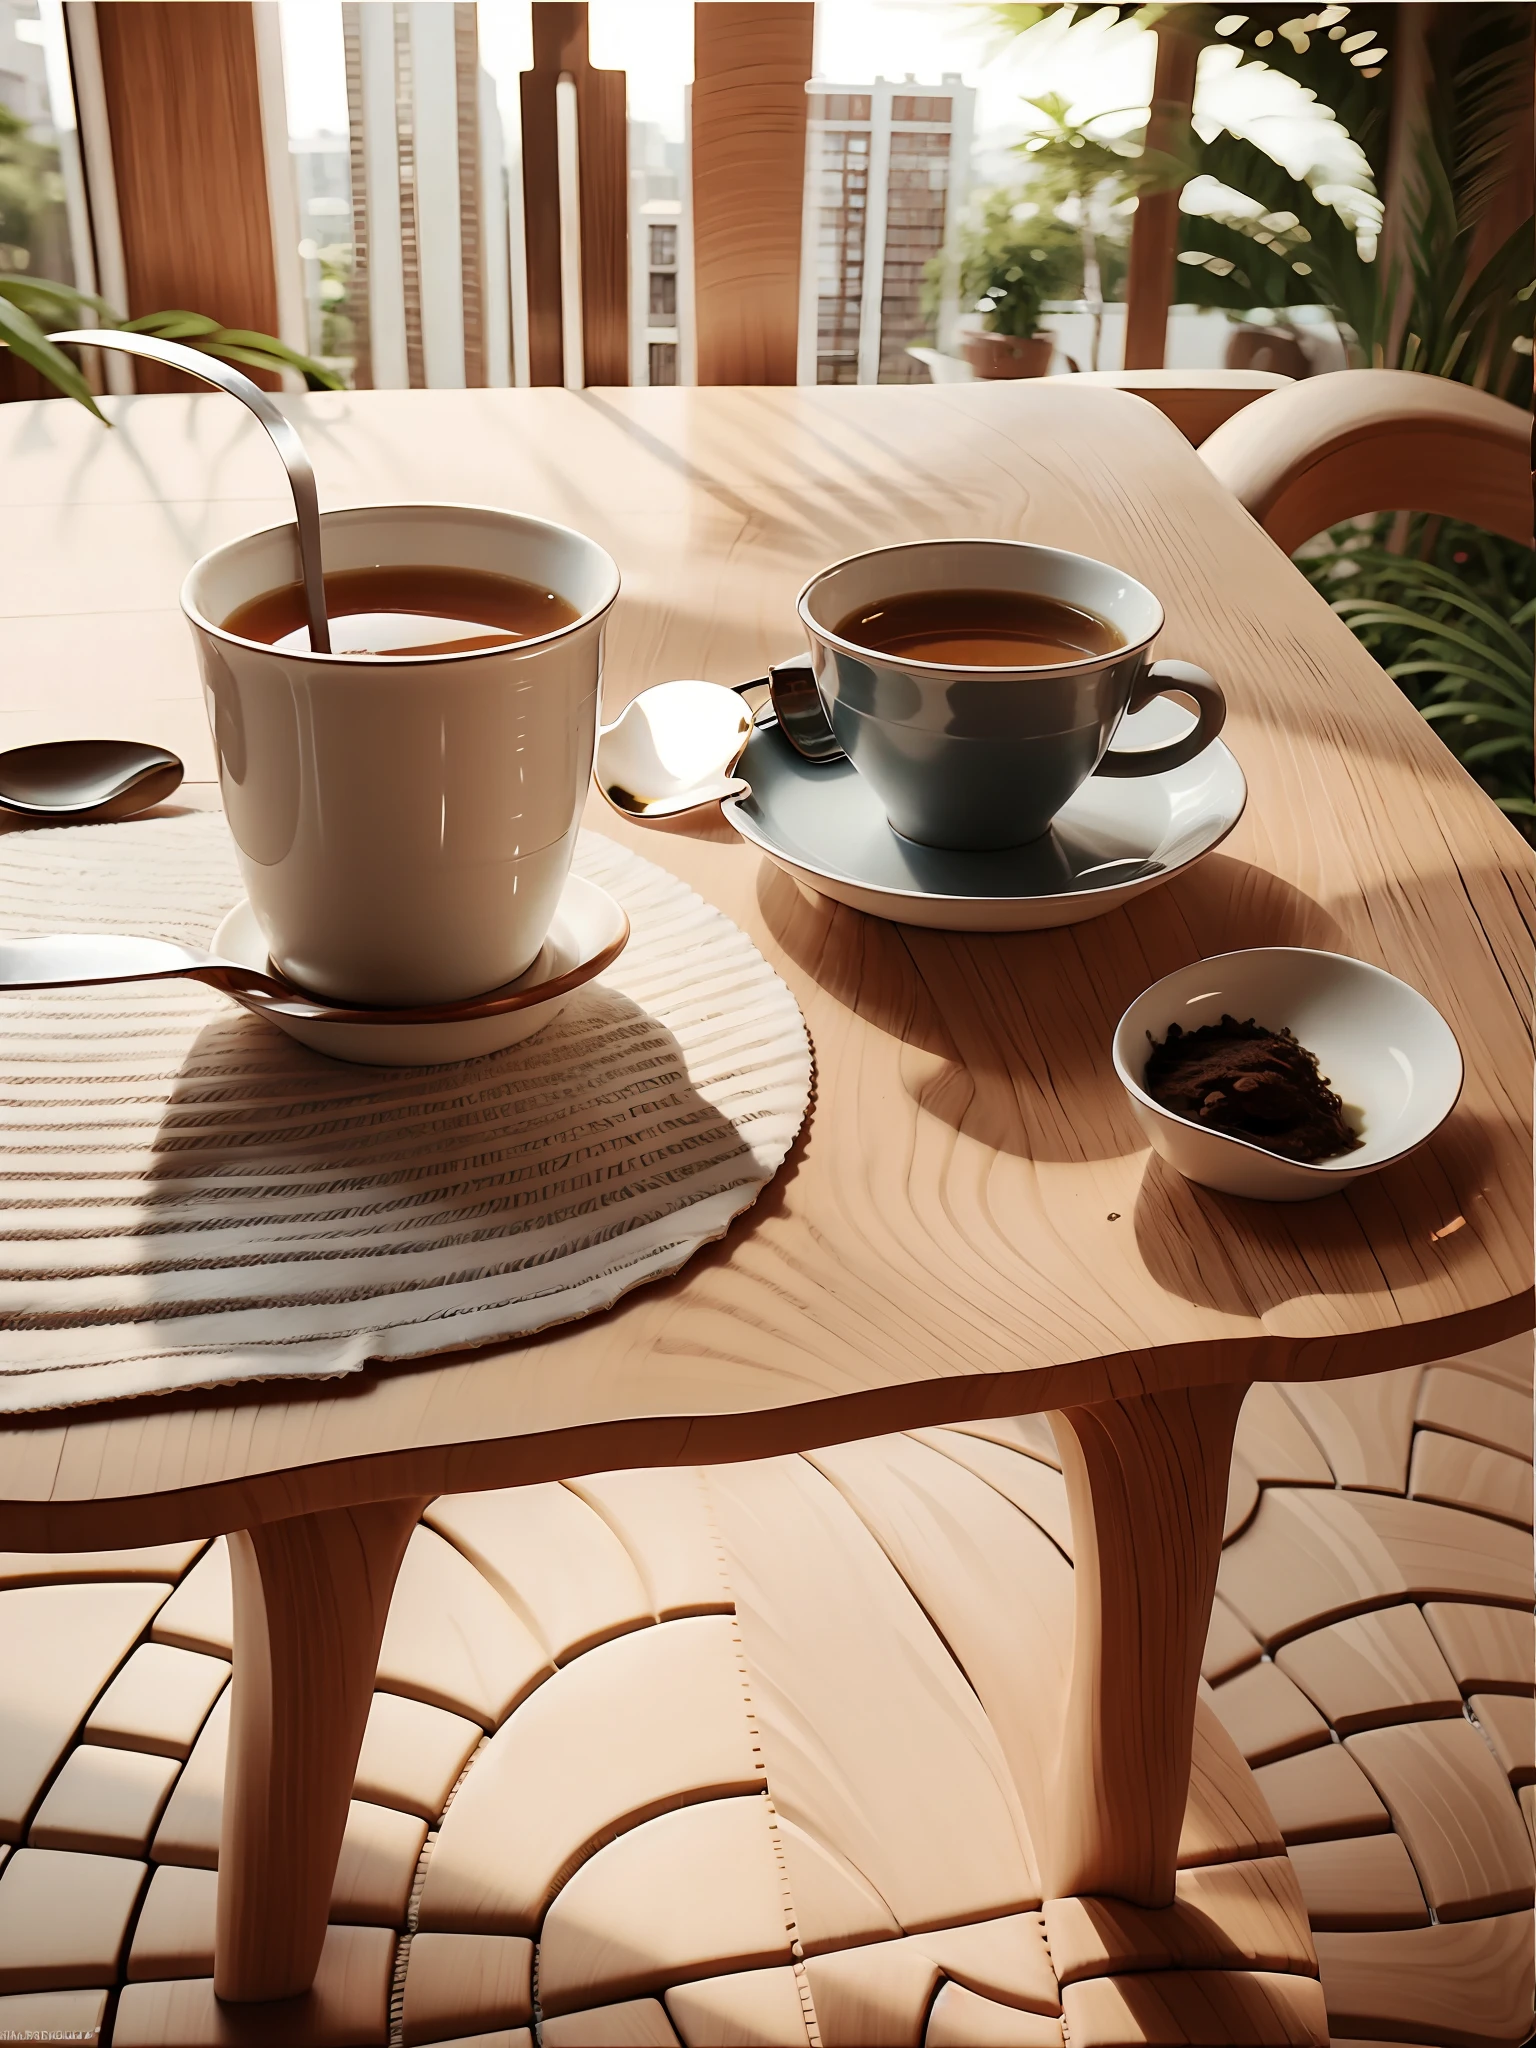 there 是 a cup of 茶 and a spoon on a table, 喝ing 茶, 是 ((喝ing a cup of 茶)), 在路边咖啡馆, 茶, 前面的桌子上放着一个杯子, 好的 weather, 杜松子酒, 喝, 好的, 在咖啡店里, 坐在咖啡馆里, 分成两半, by Aleksander Kots是, with a 喝